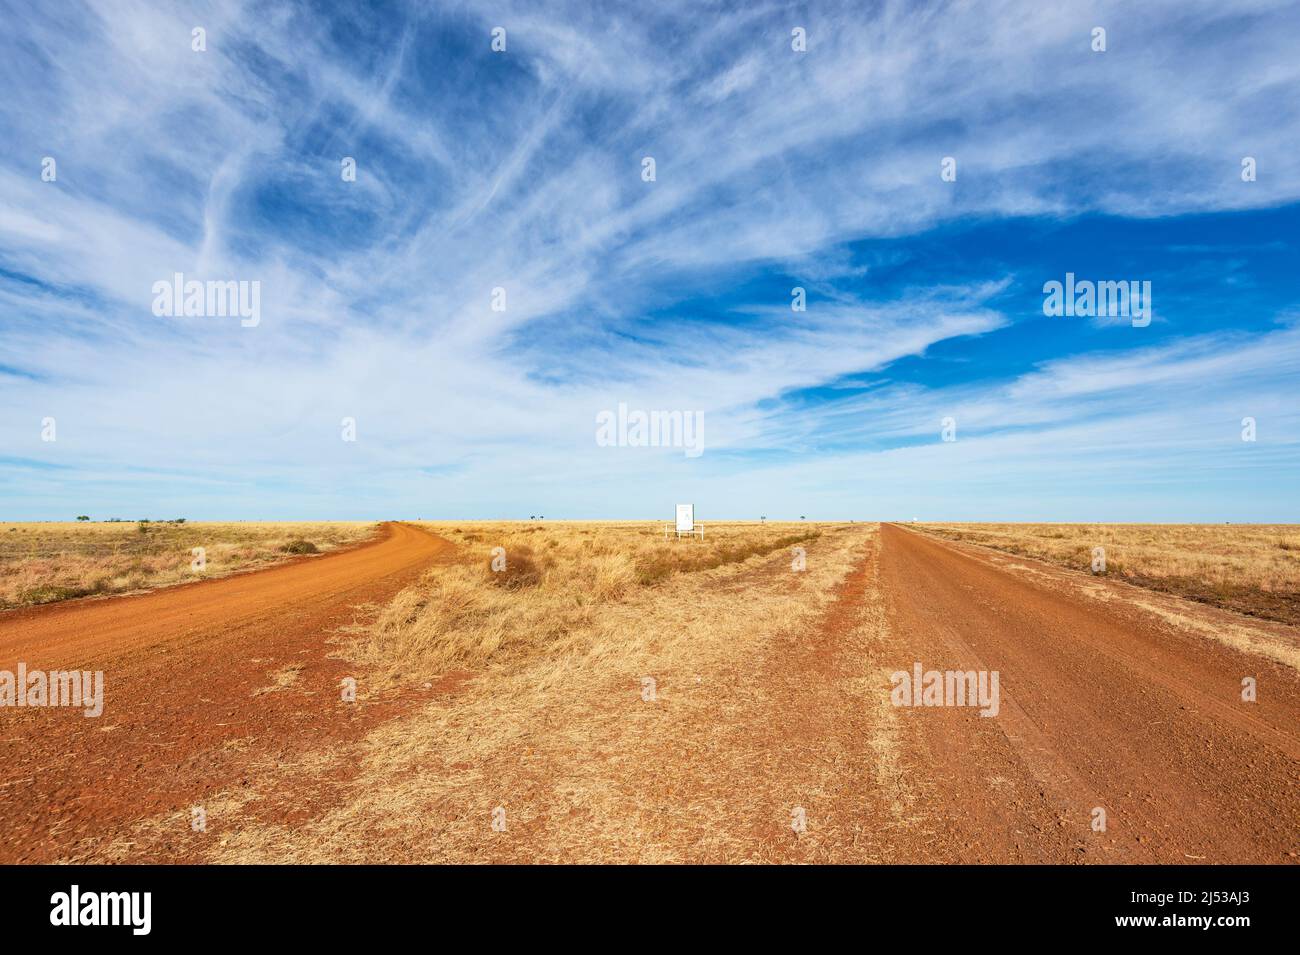 Routes en gravier à travers les plaines arides isolées de la route historique de Barkly stock, Barkly Tablelands, territoire du Nord, territoire du Nord, Australie Banque D'Images